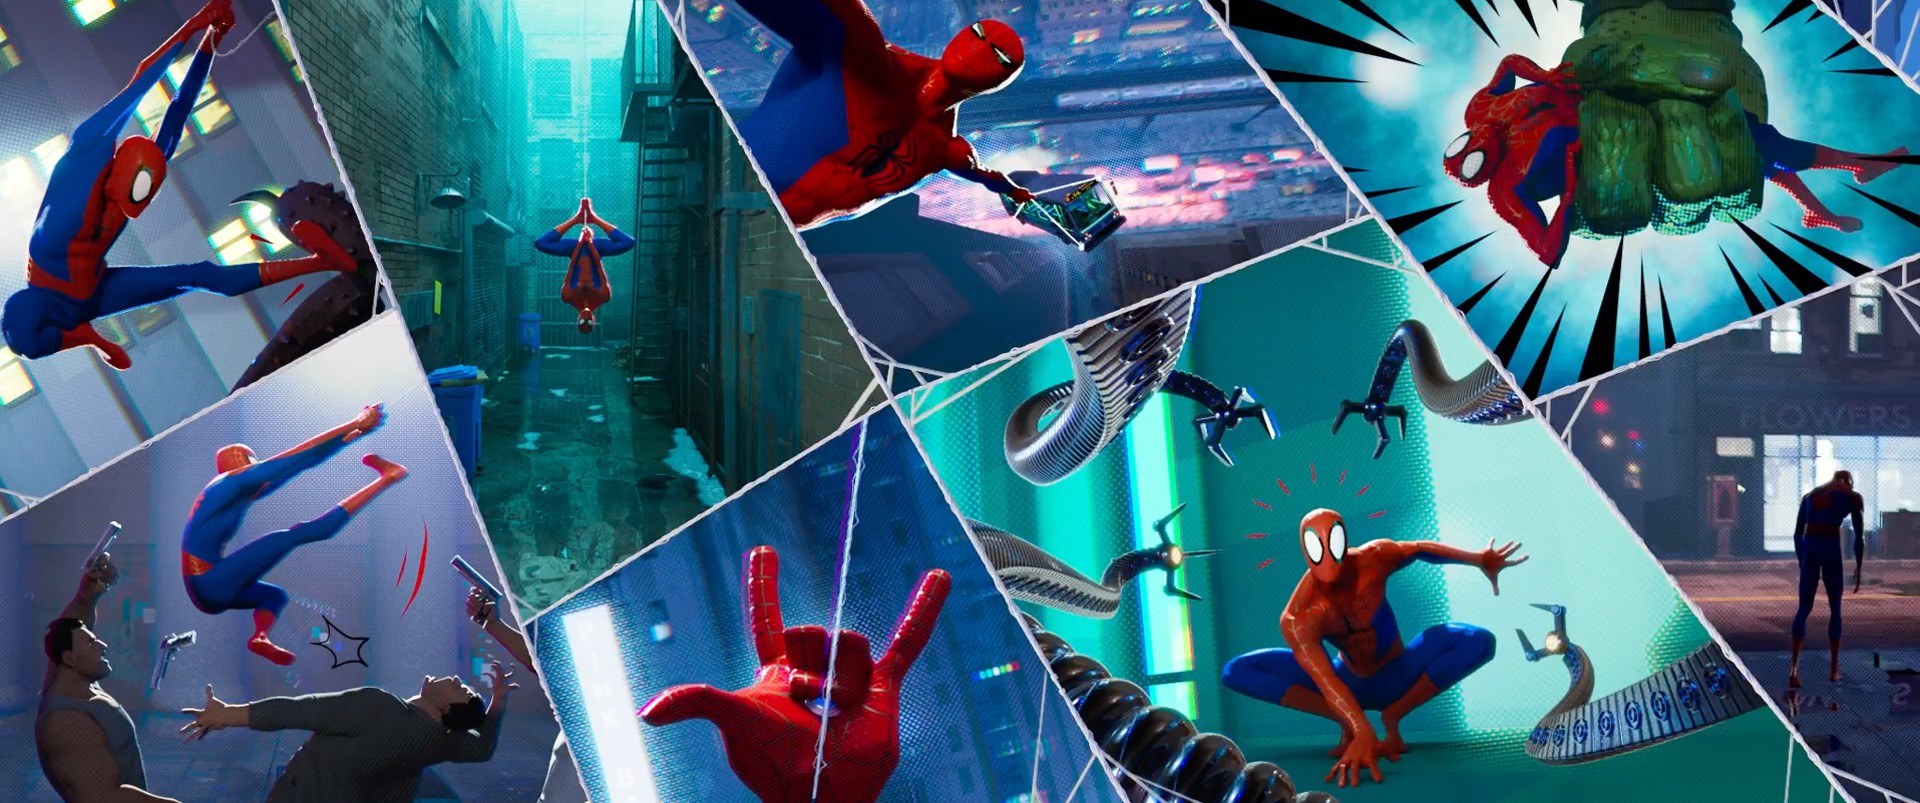 Spider Man Into The Spider Verse Tung Trailer Mới Hé Lộ Một Binh đoàn Người Nhện Từ Khắp Các